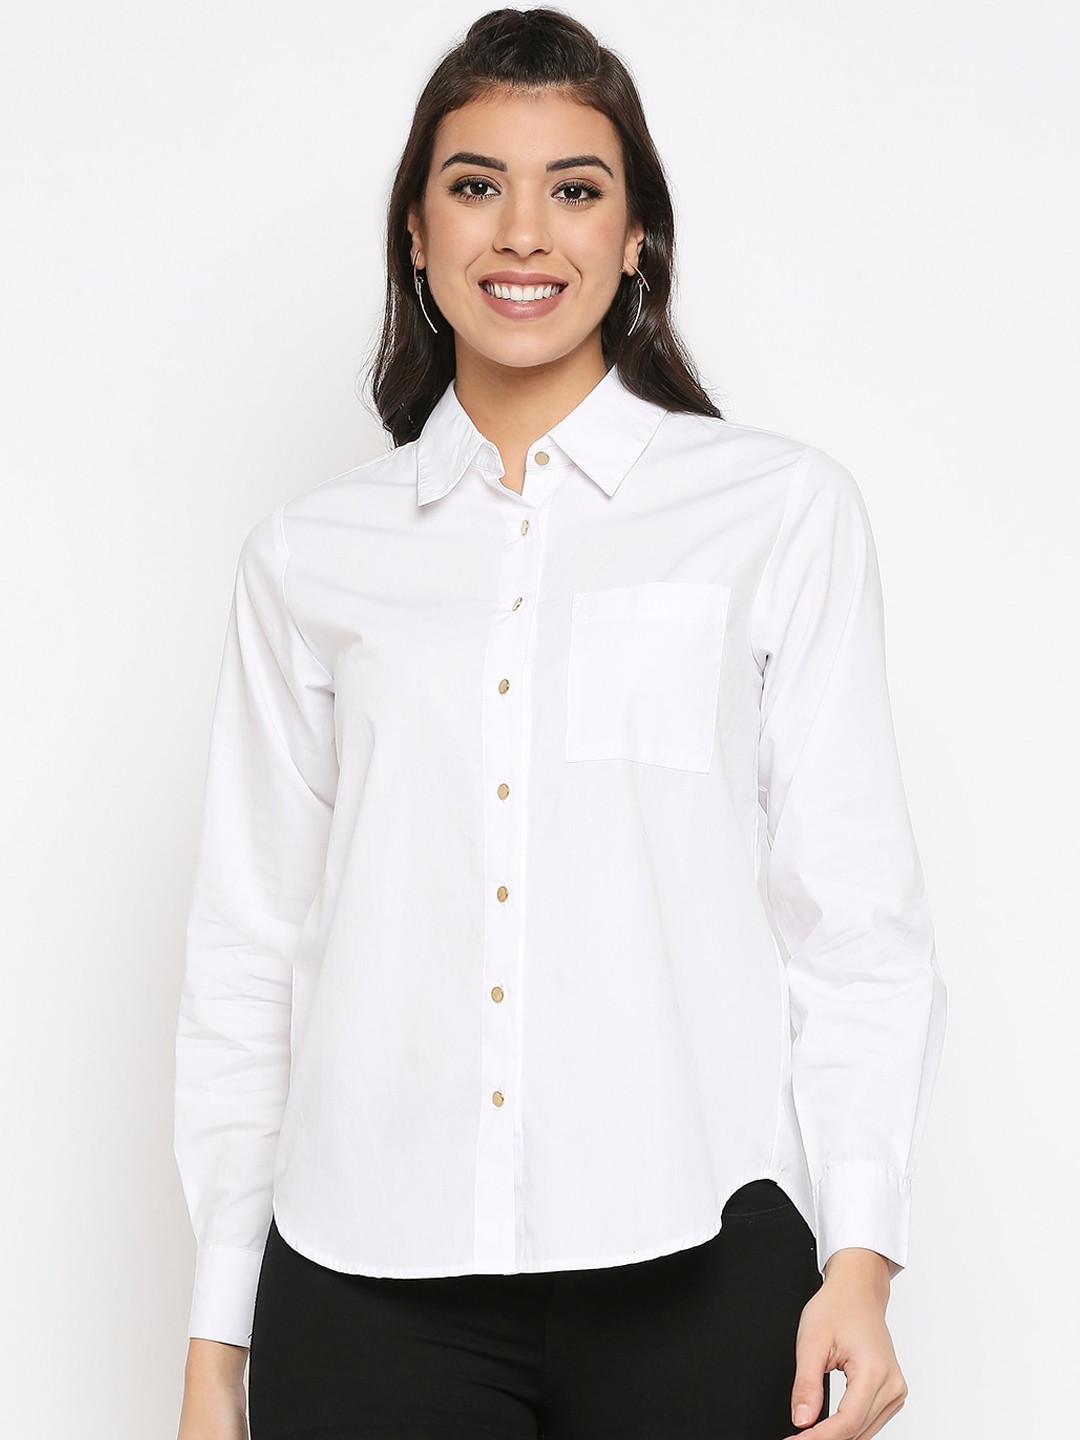 Buy 20Dresses Women White Opaque Casual Shirt - Shirts for Women ...